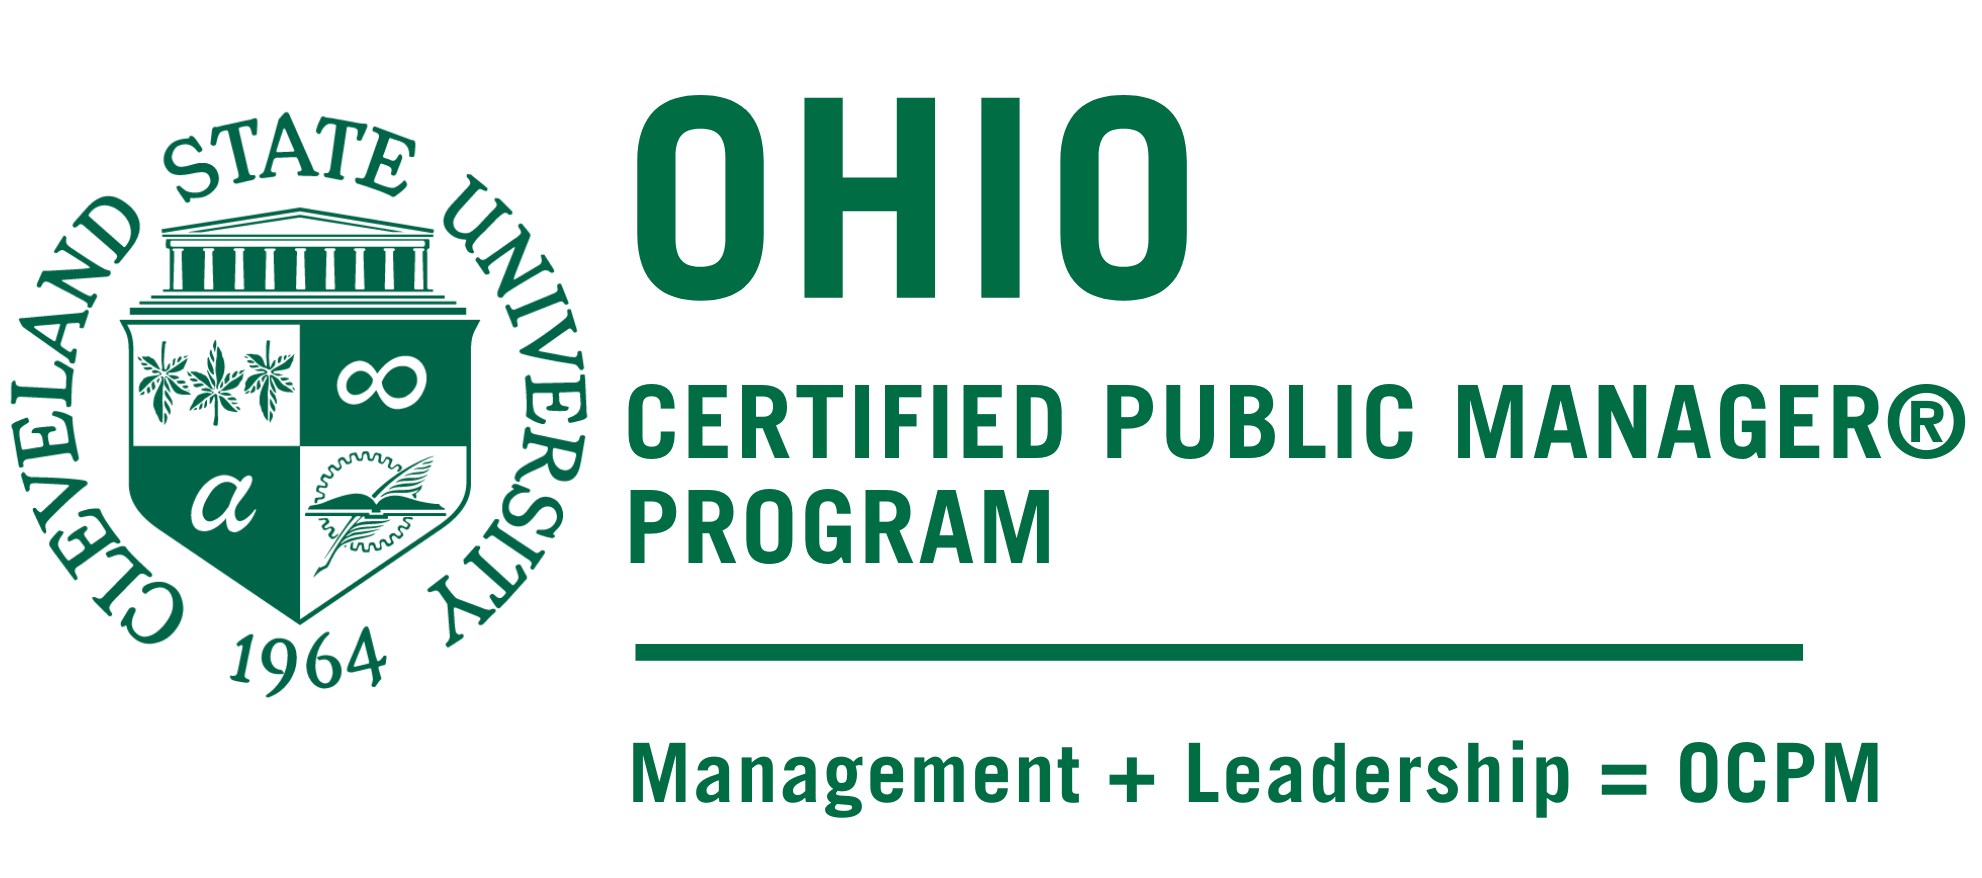 俄亥俄州认证的公共管理项目